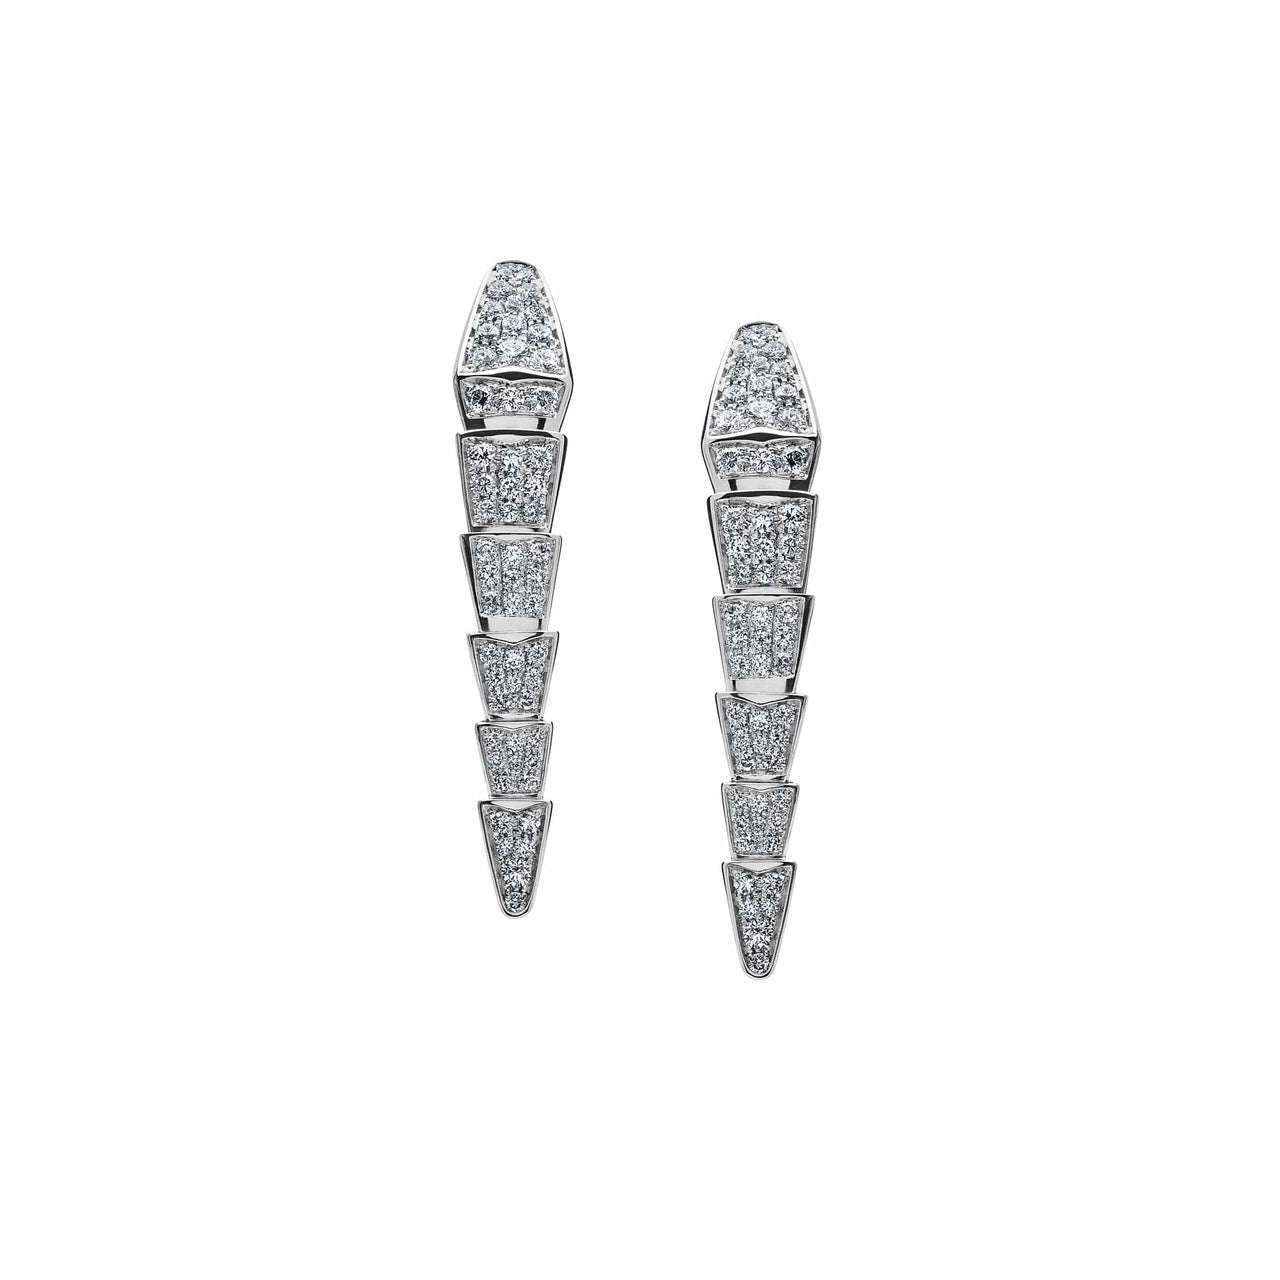 Bvlgari Serpenti Viper White Gold Diamond Earrings 348320 Wrist Aficionado